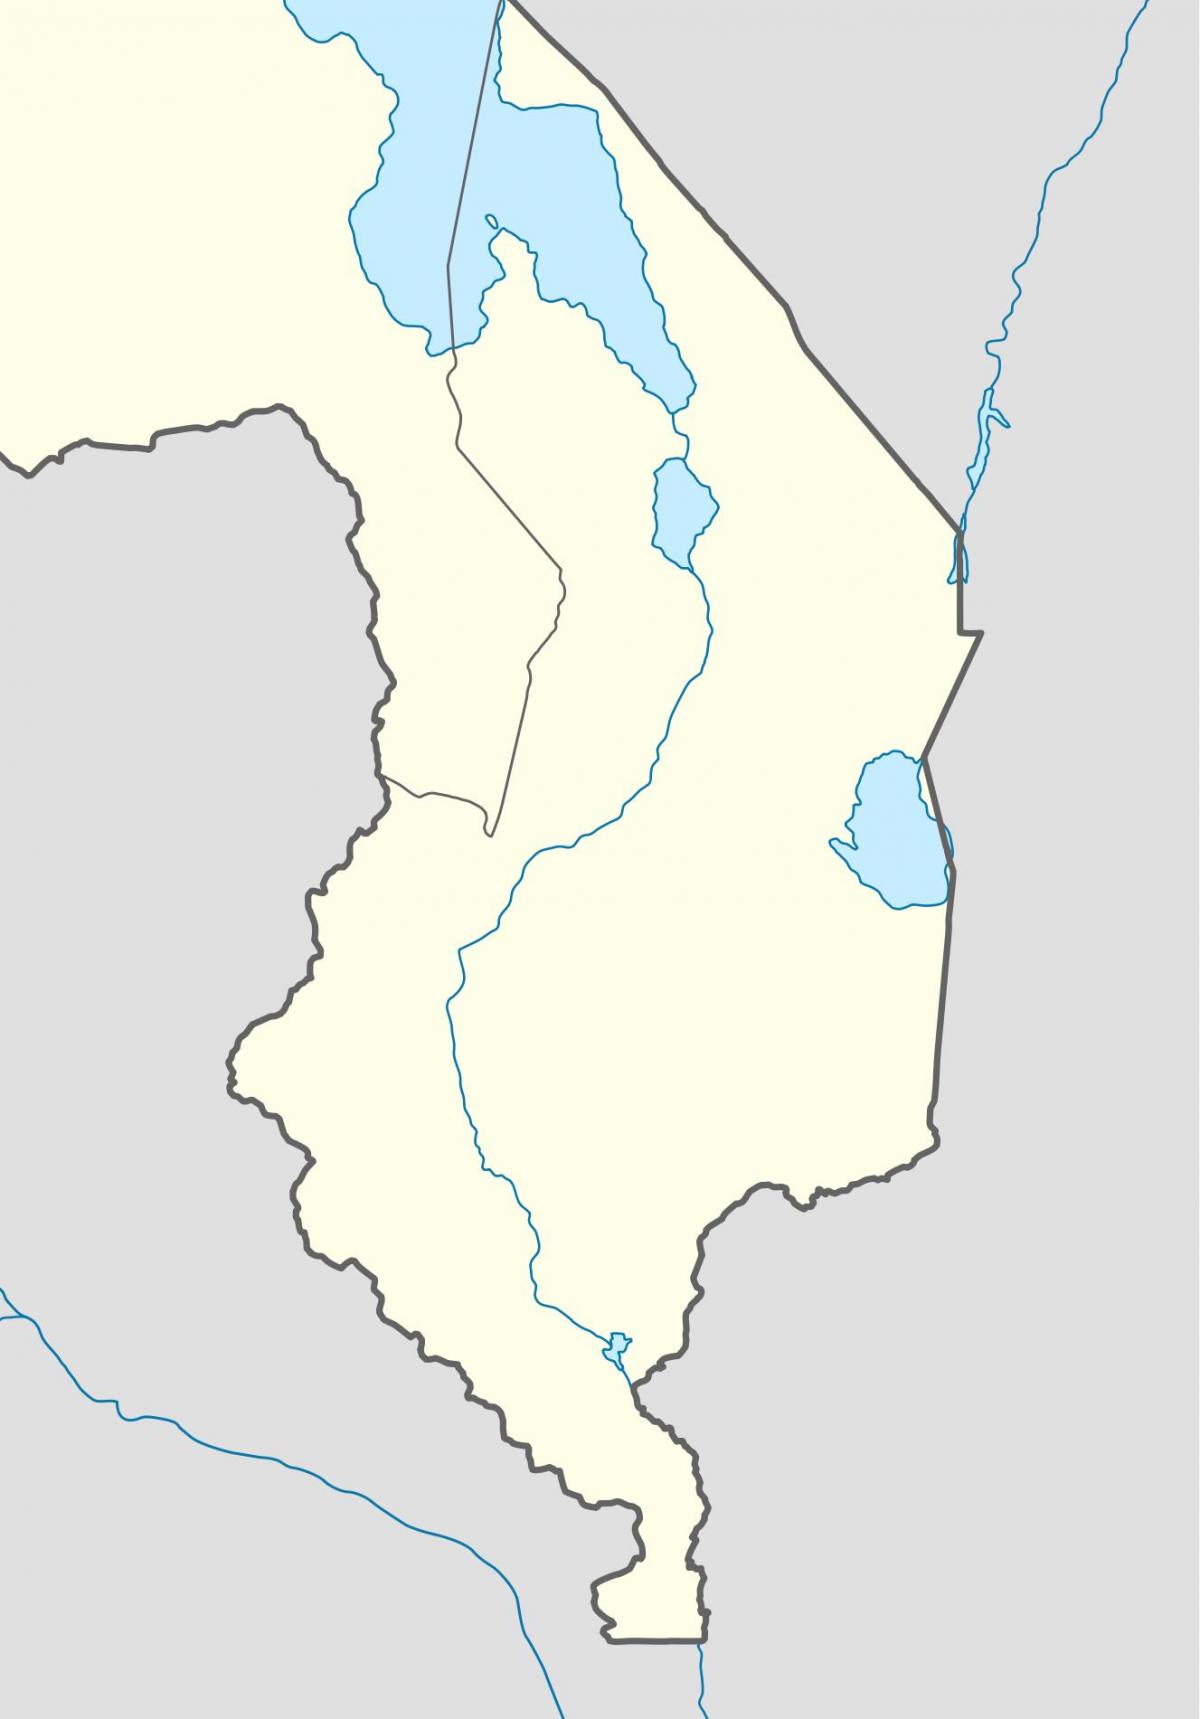 karta u Malaviju reke